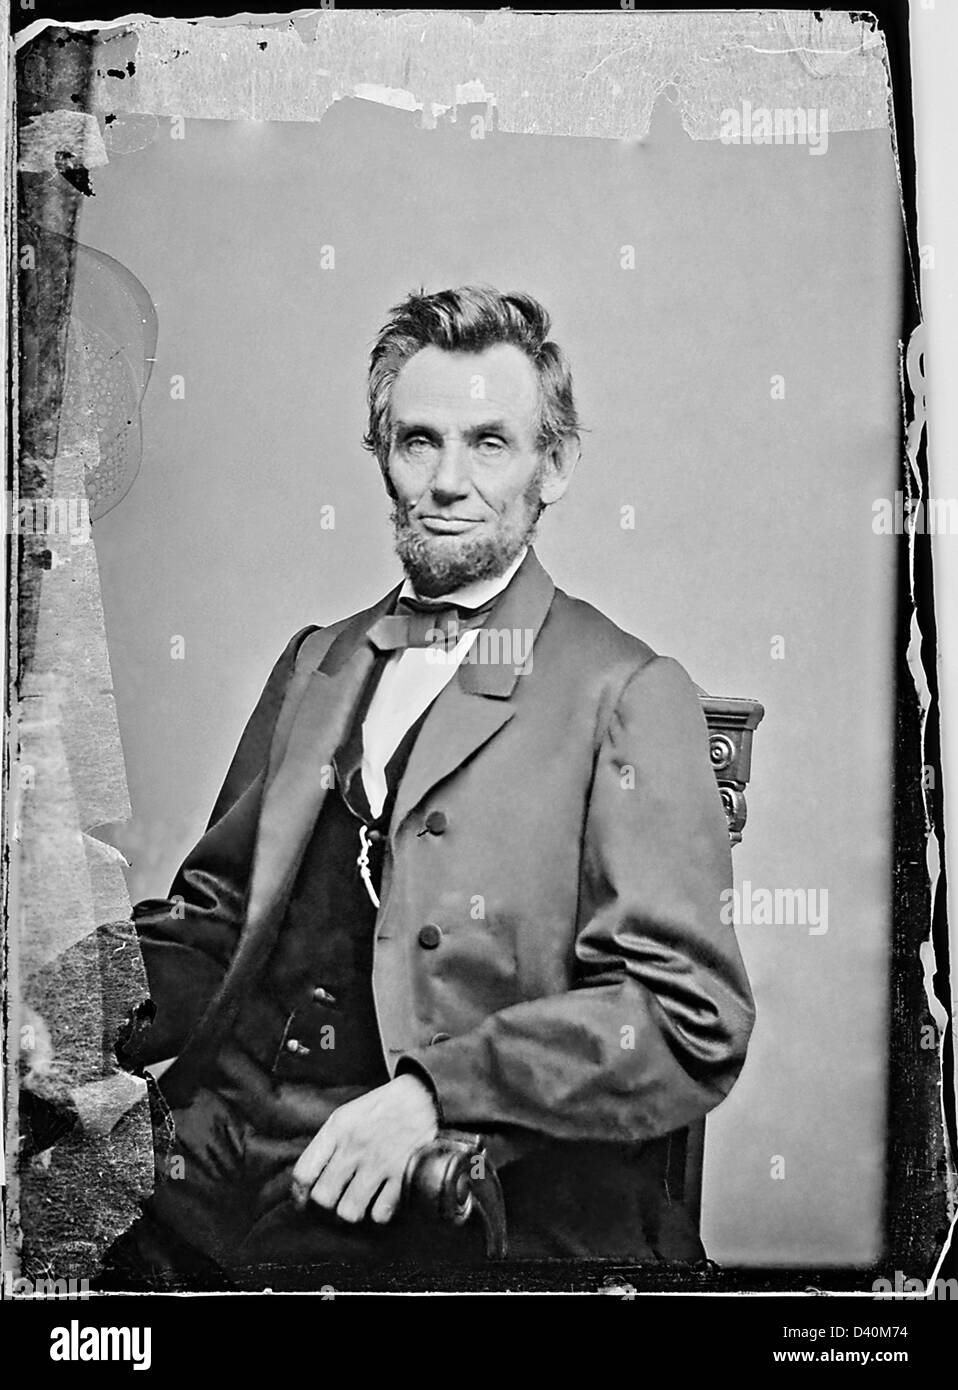 Ferrotypie nasse Teller Porträt von Präsident Abraham Lincoln von Matthew Brady ca. 1863. Foto mit authentischen kolloidales Marken. Stockfoto